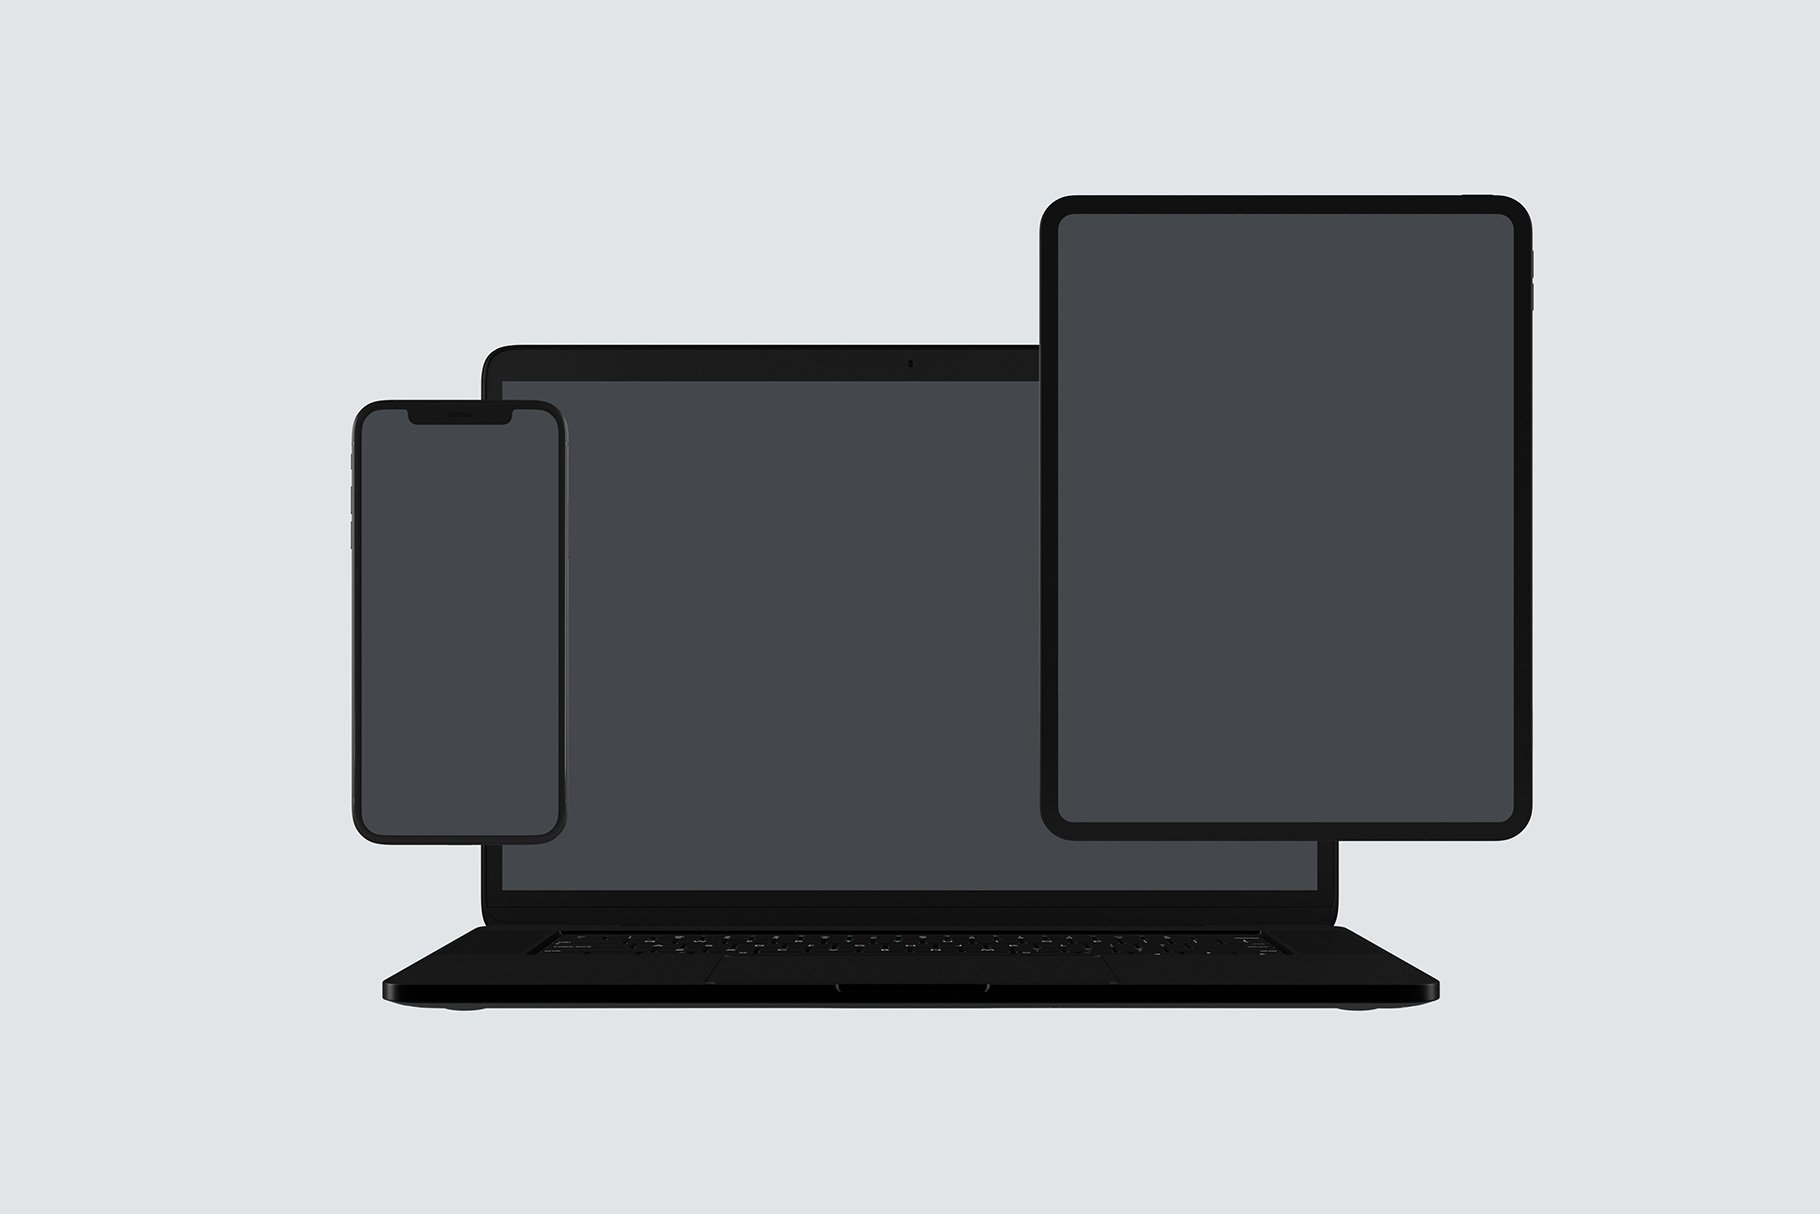 黑色系网站UI设计提案苹果设备展示样机合集 Black Apple Devices Mockup Set插图9